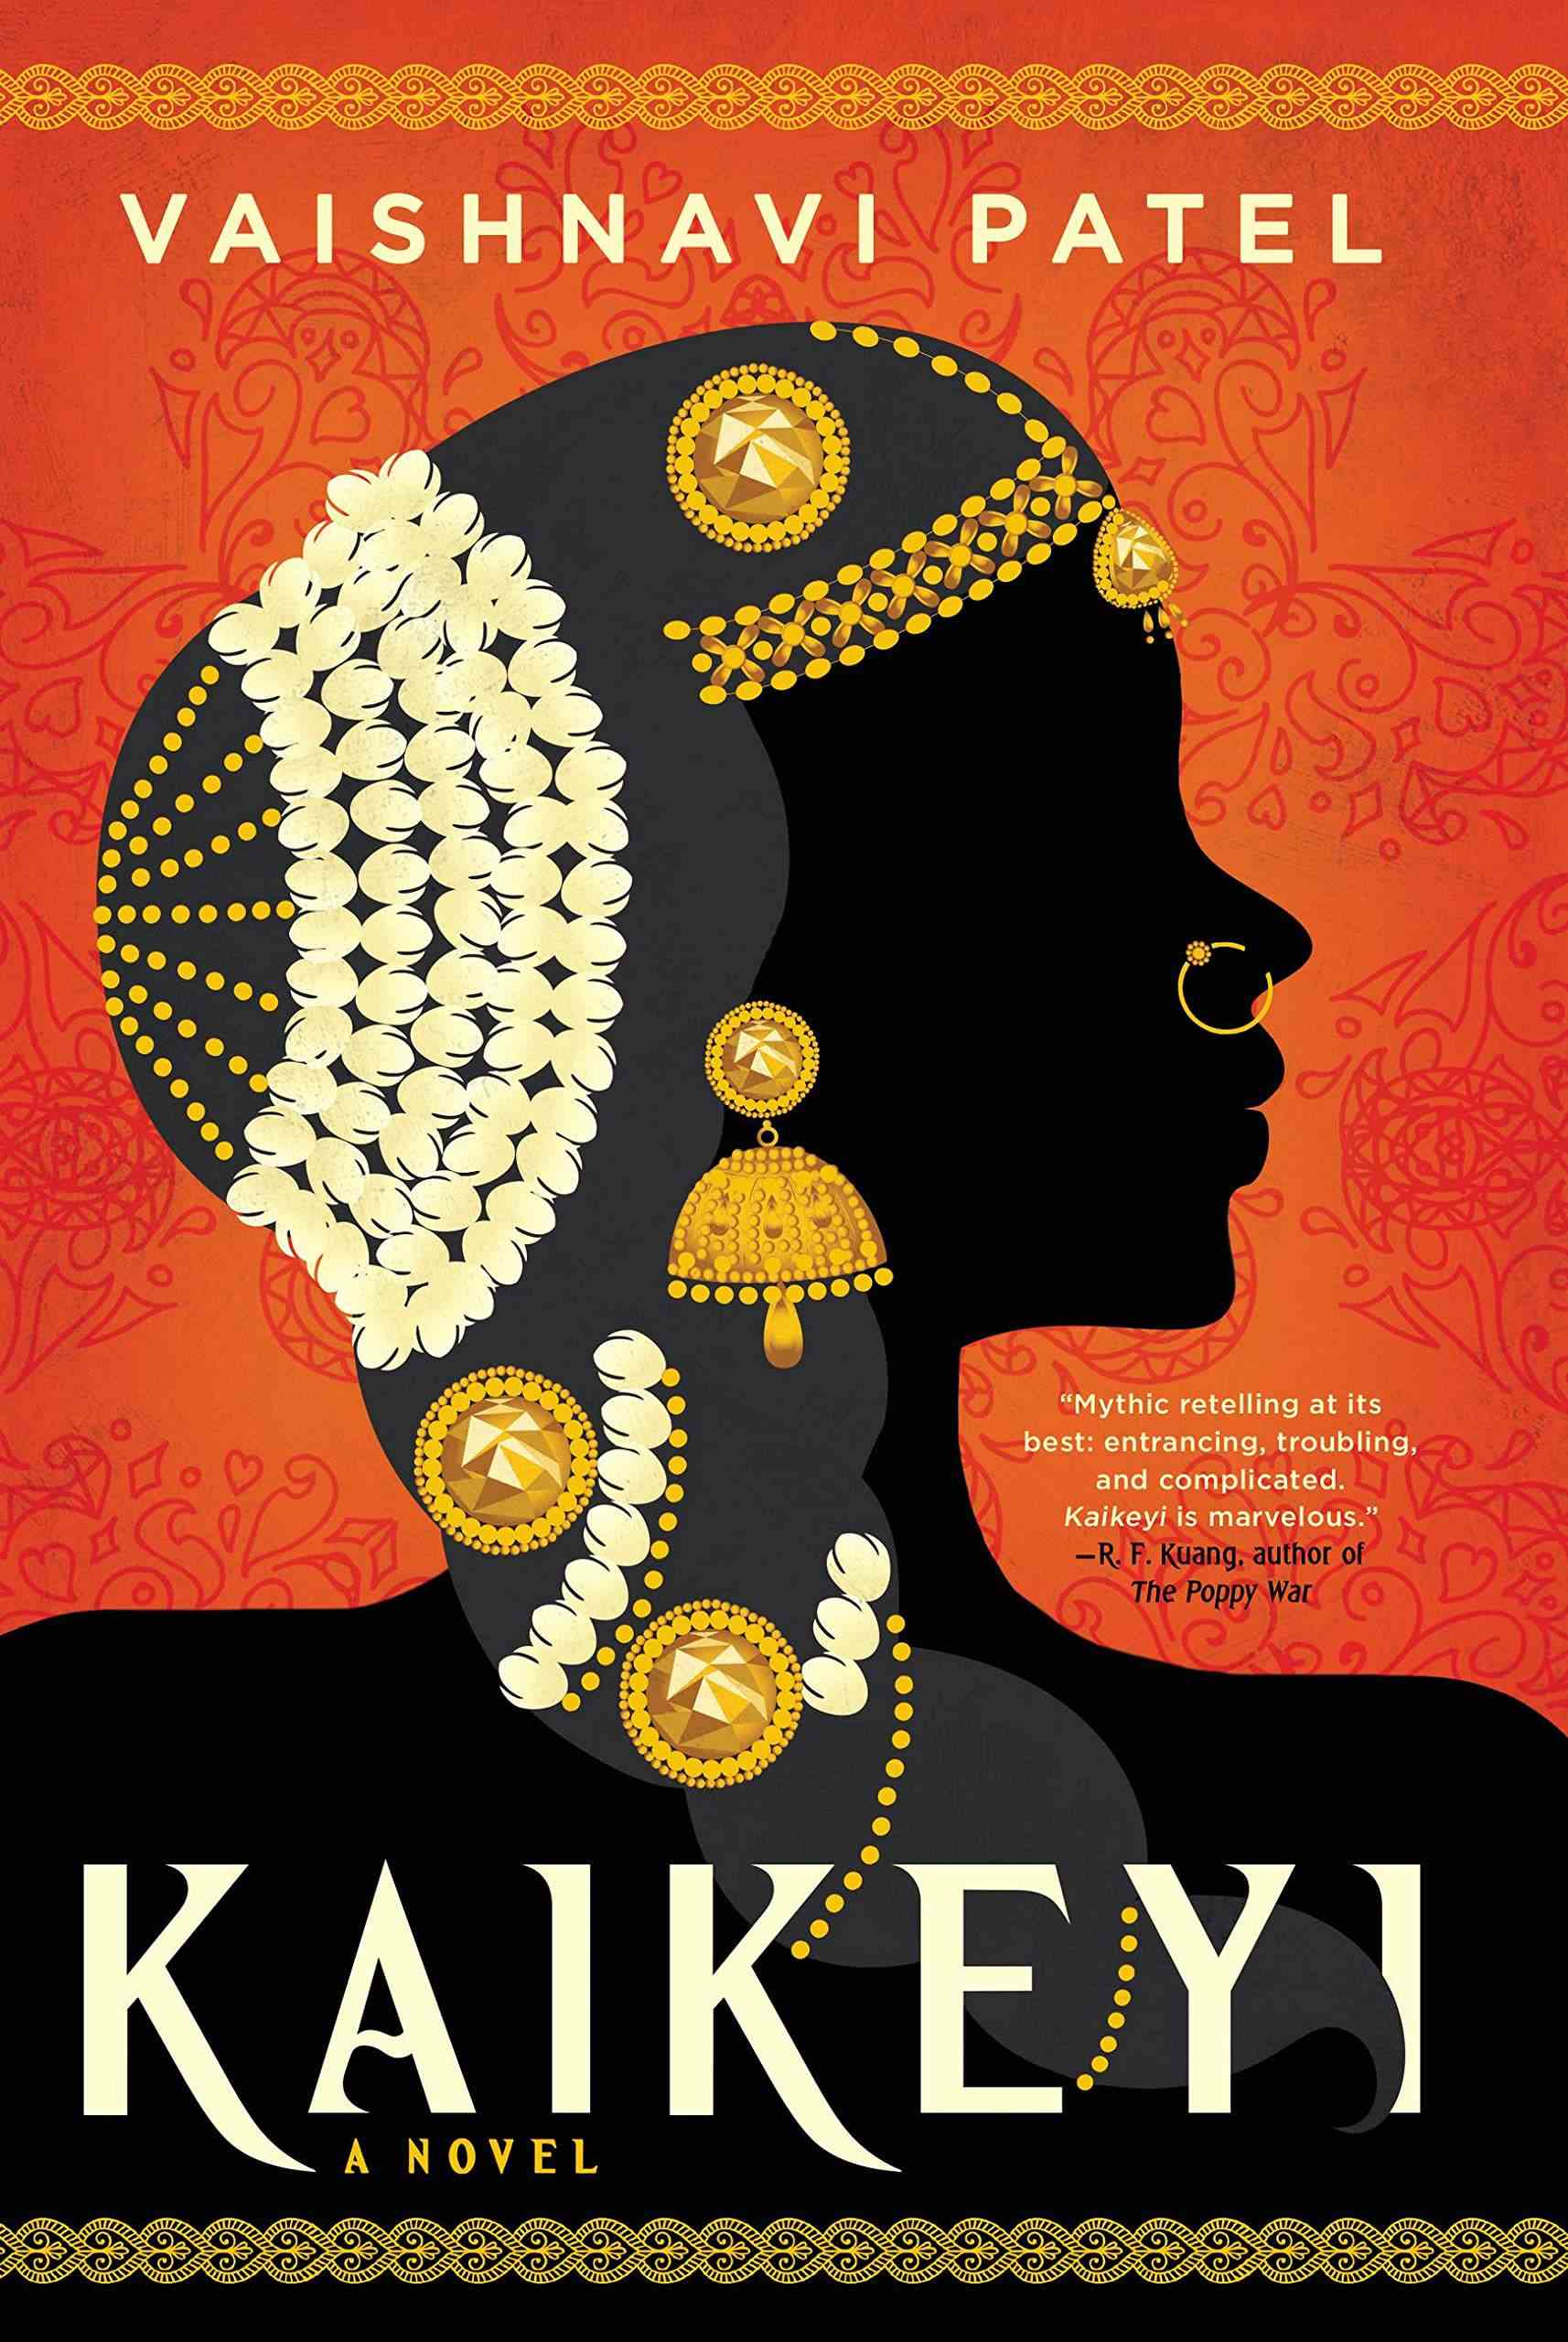 Couverture de Kaikeyi par Vaishnavi Patel